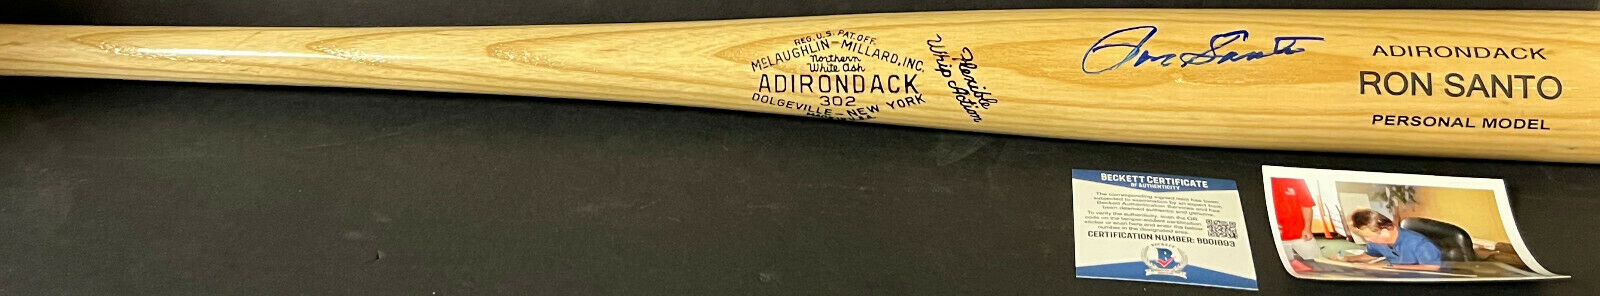 Ron Santo Chicago Cubs White Sox Autographed Signed Bat Pro Model